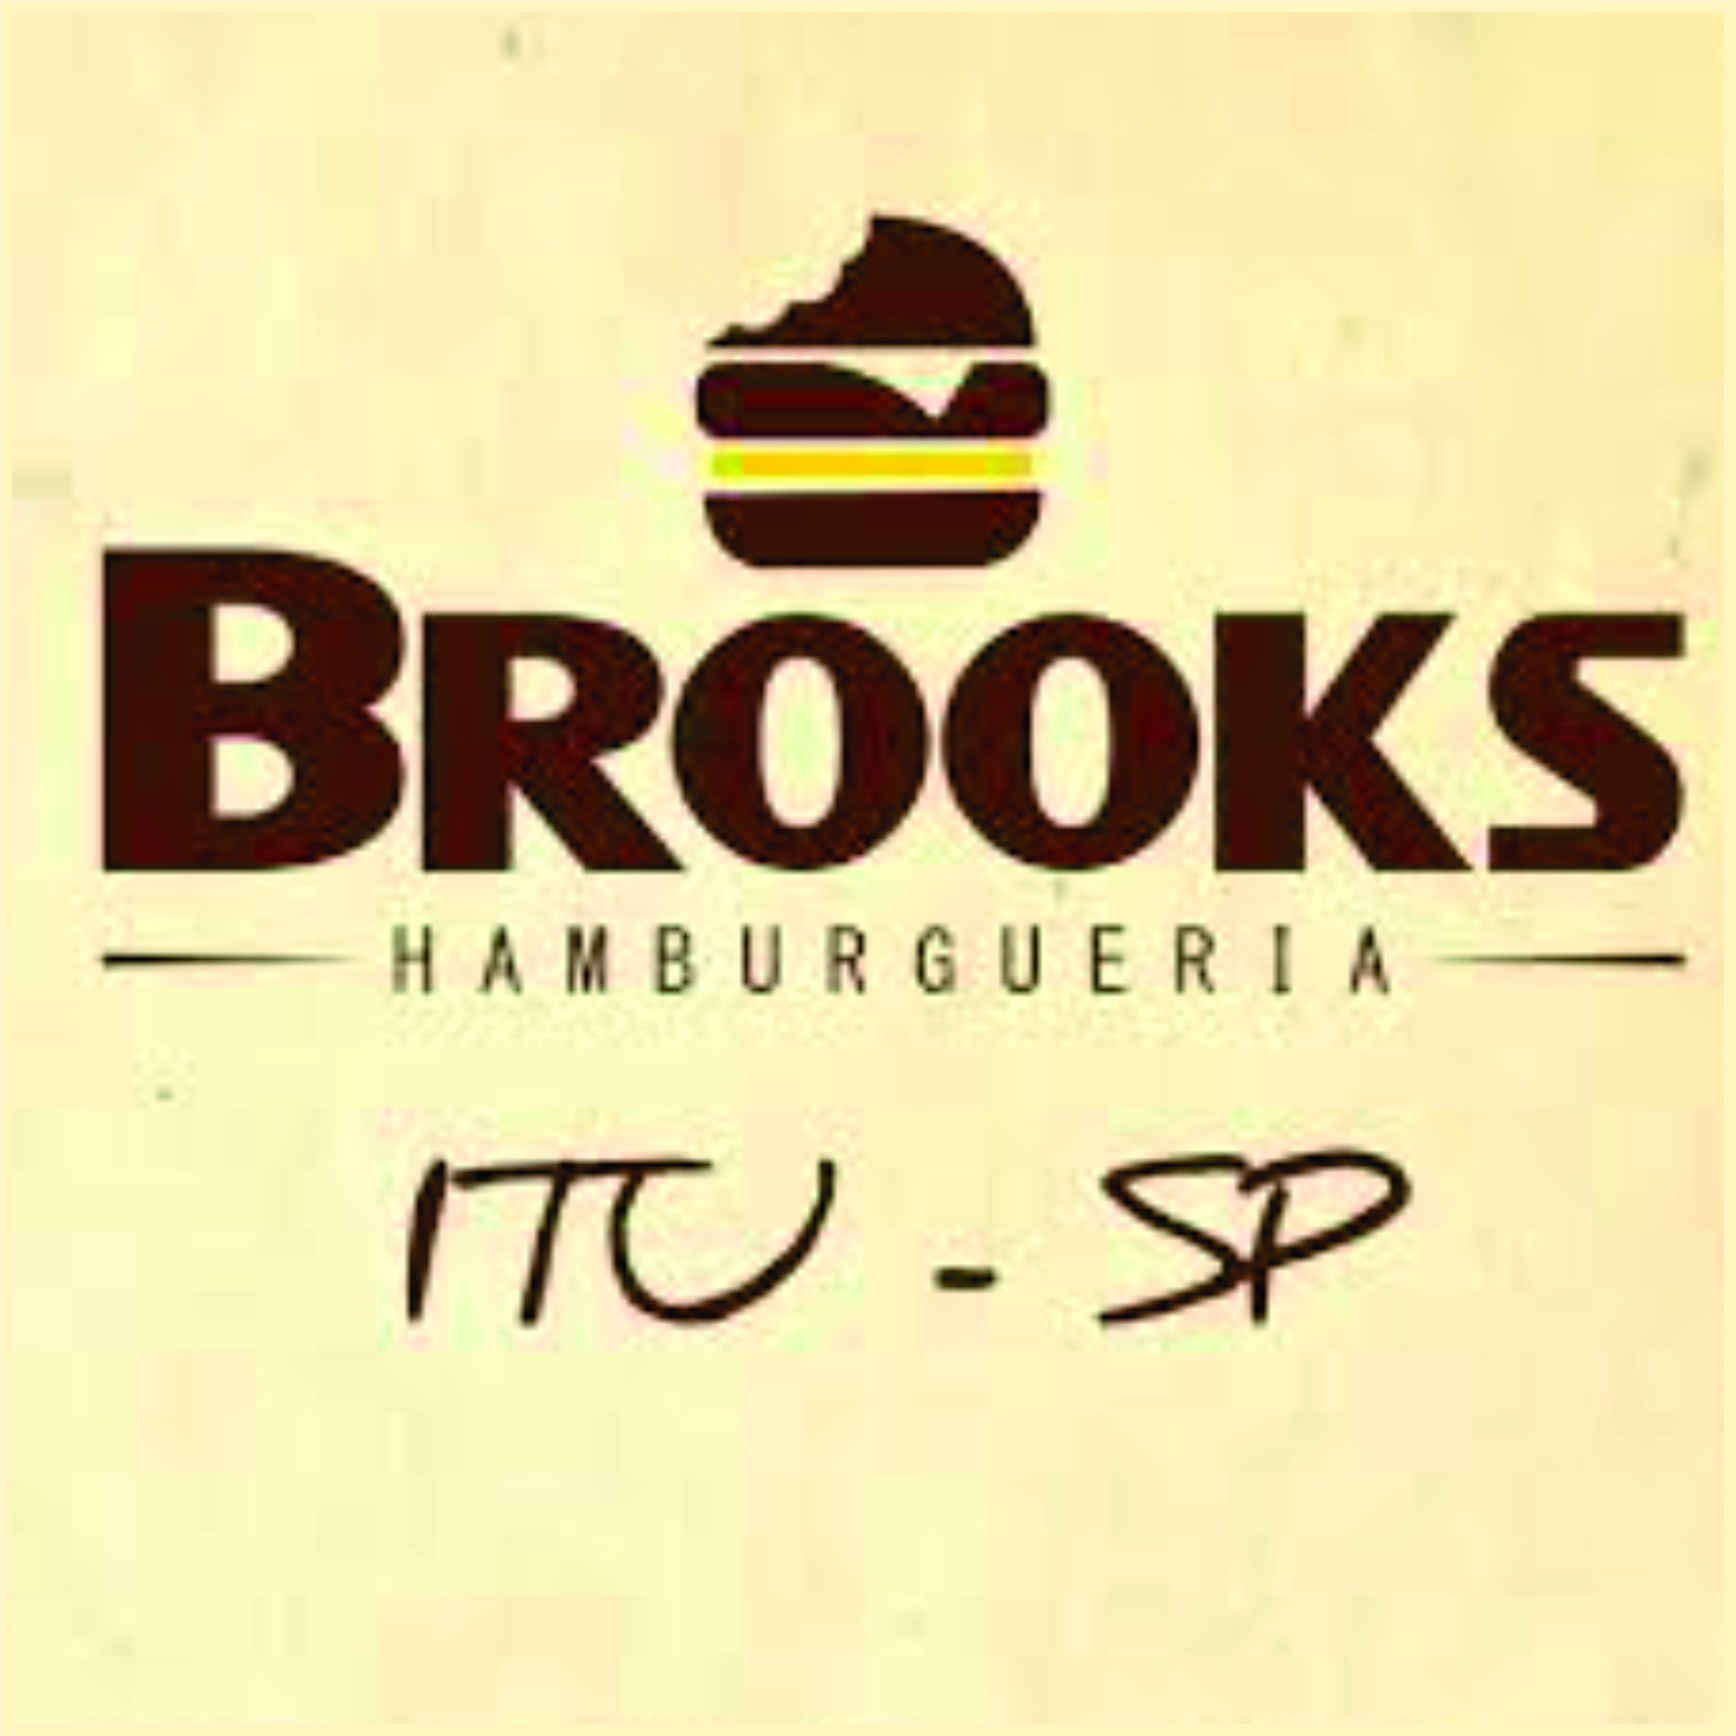 Brooks Hamburgueria